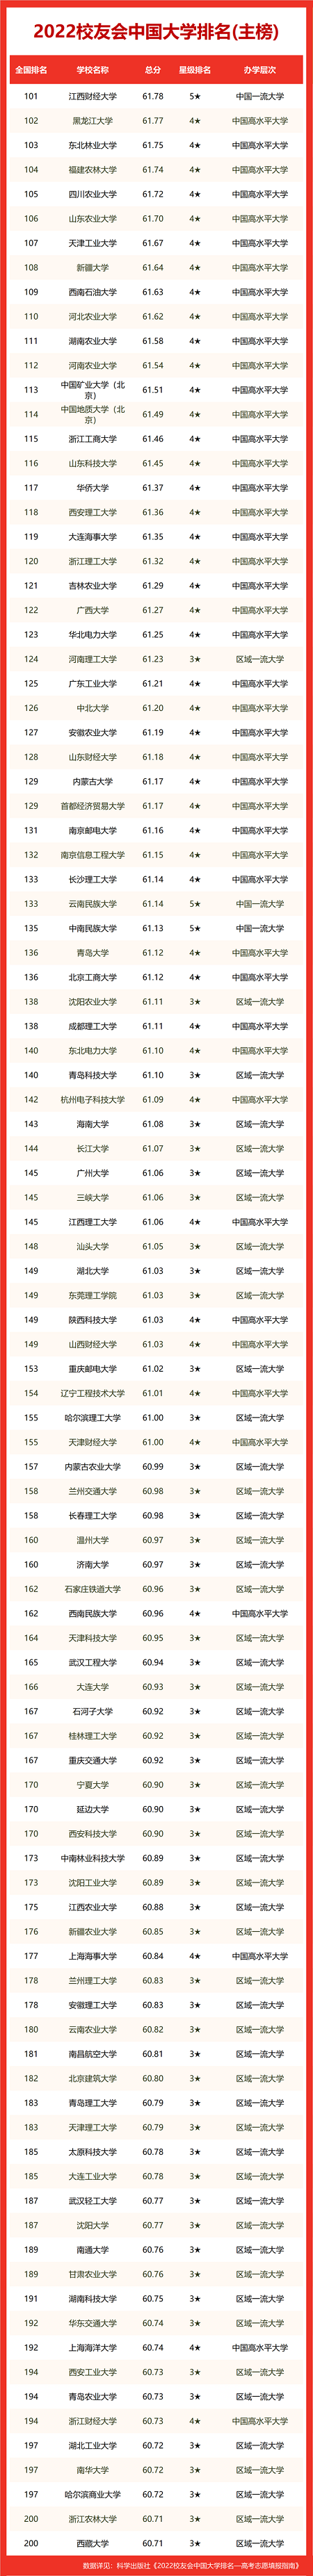 大学综合排名_中国大学综合排名